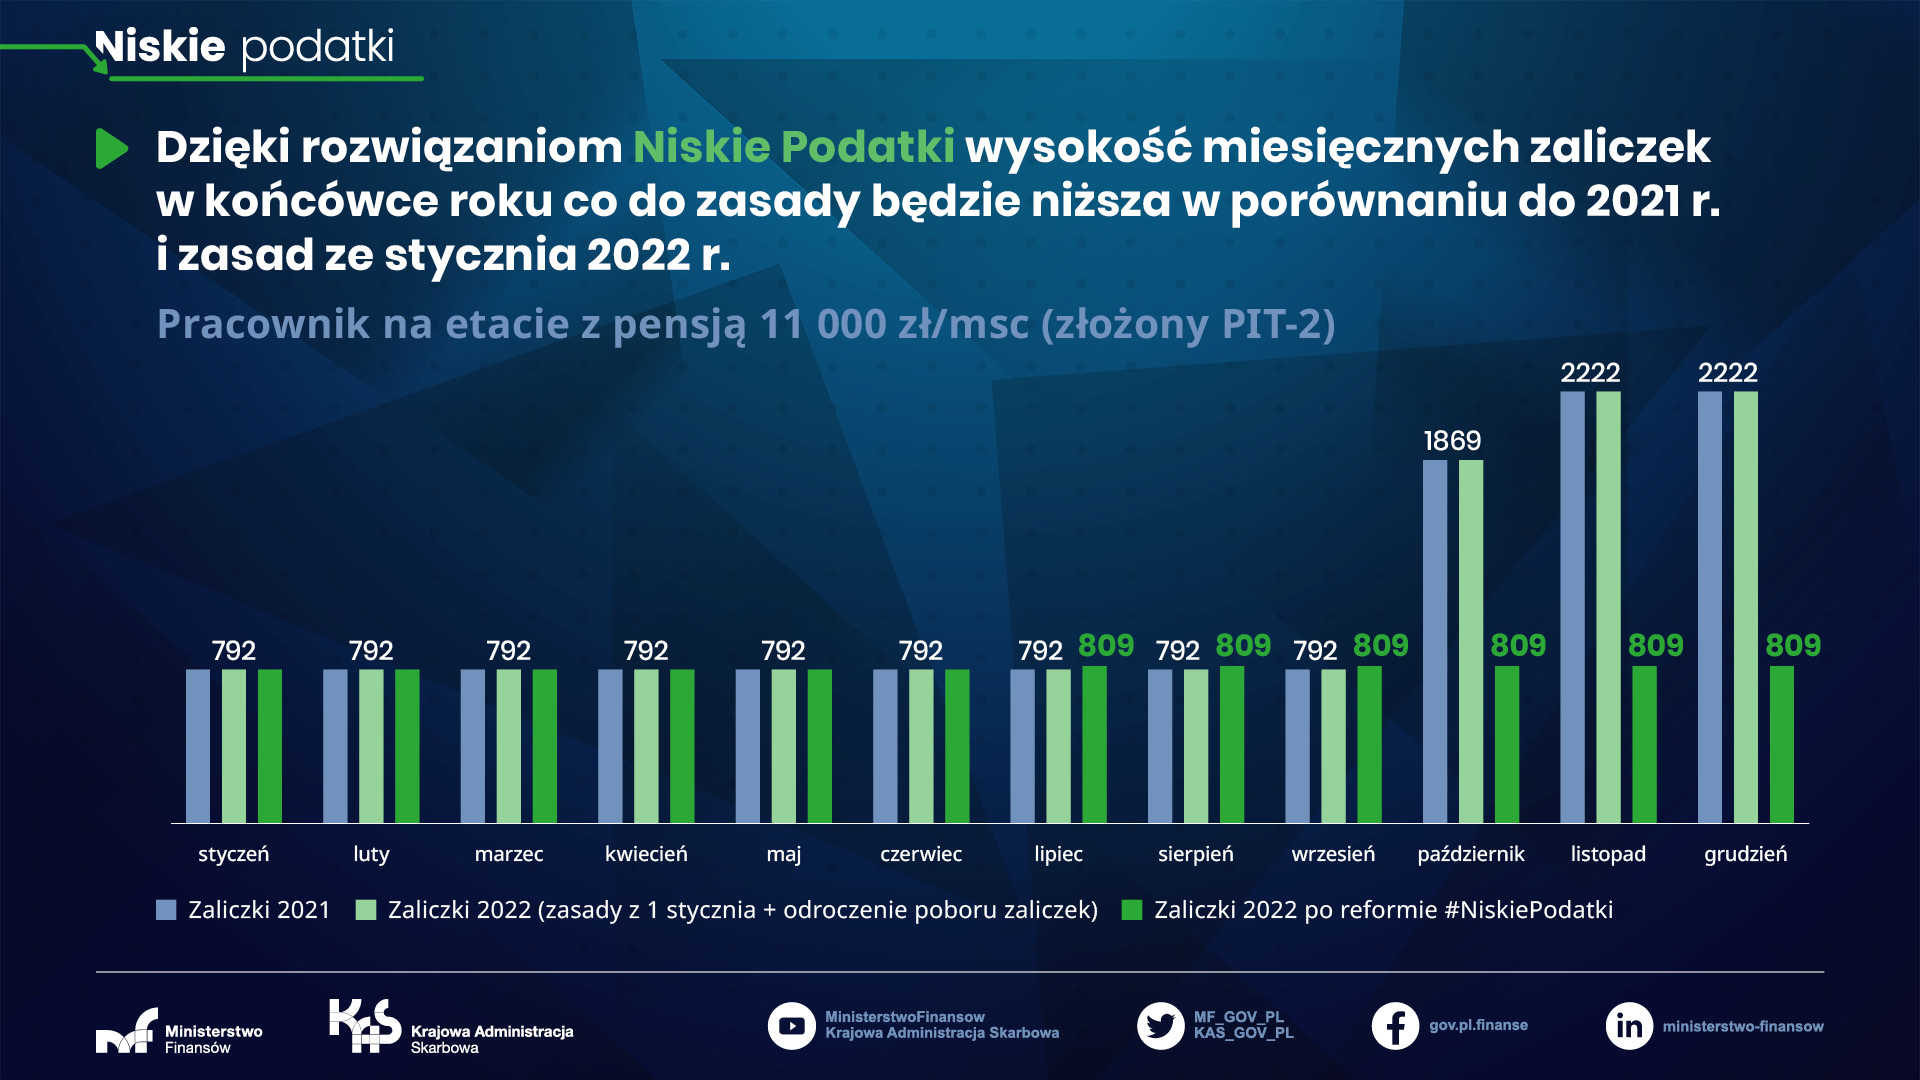 Niskie podatki - pracownik na etacie z pensją 11 000 zł/msc (złożony PIT-2)